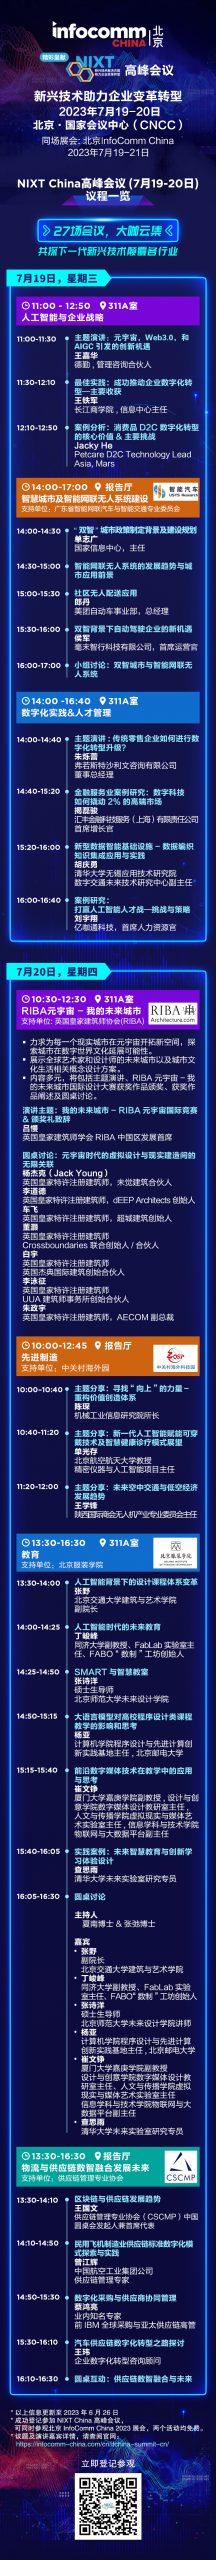 NIXT China高峰会议 | 27场会议，数十位大咖，共探新兴技术如何推动各行业数字化转型